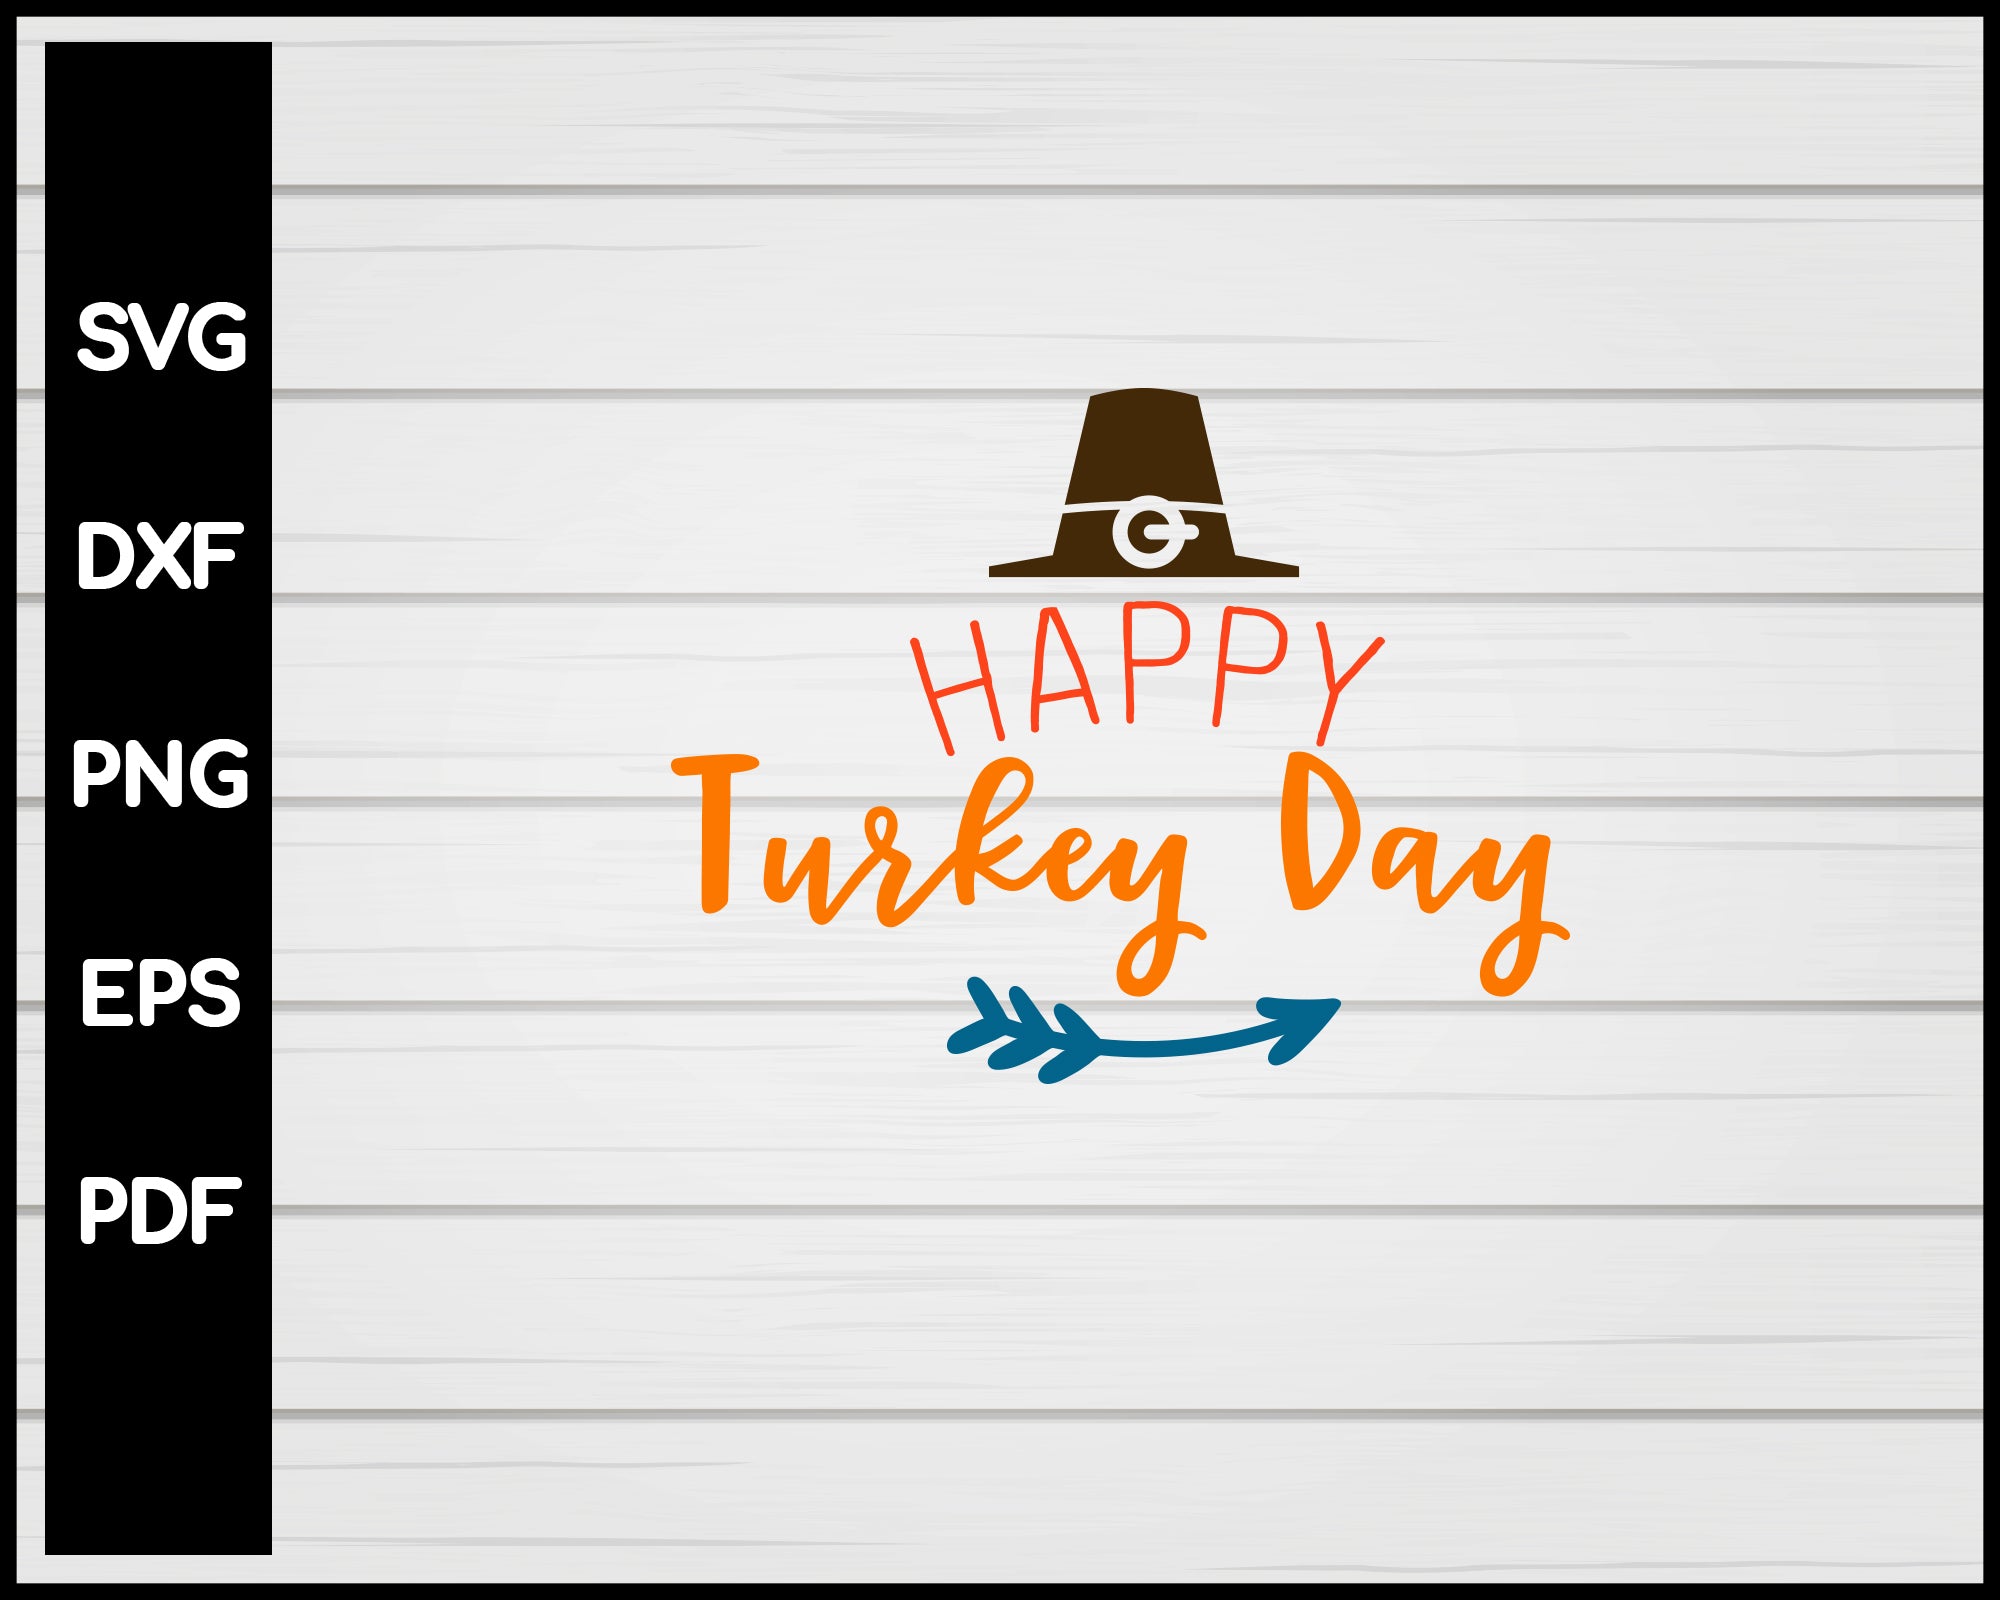 Happy Turkey Day svg